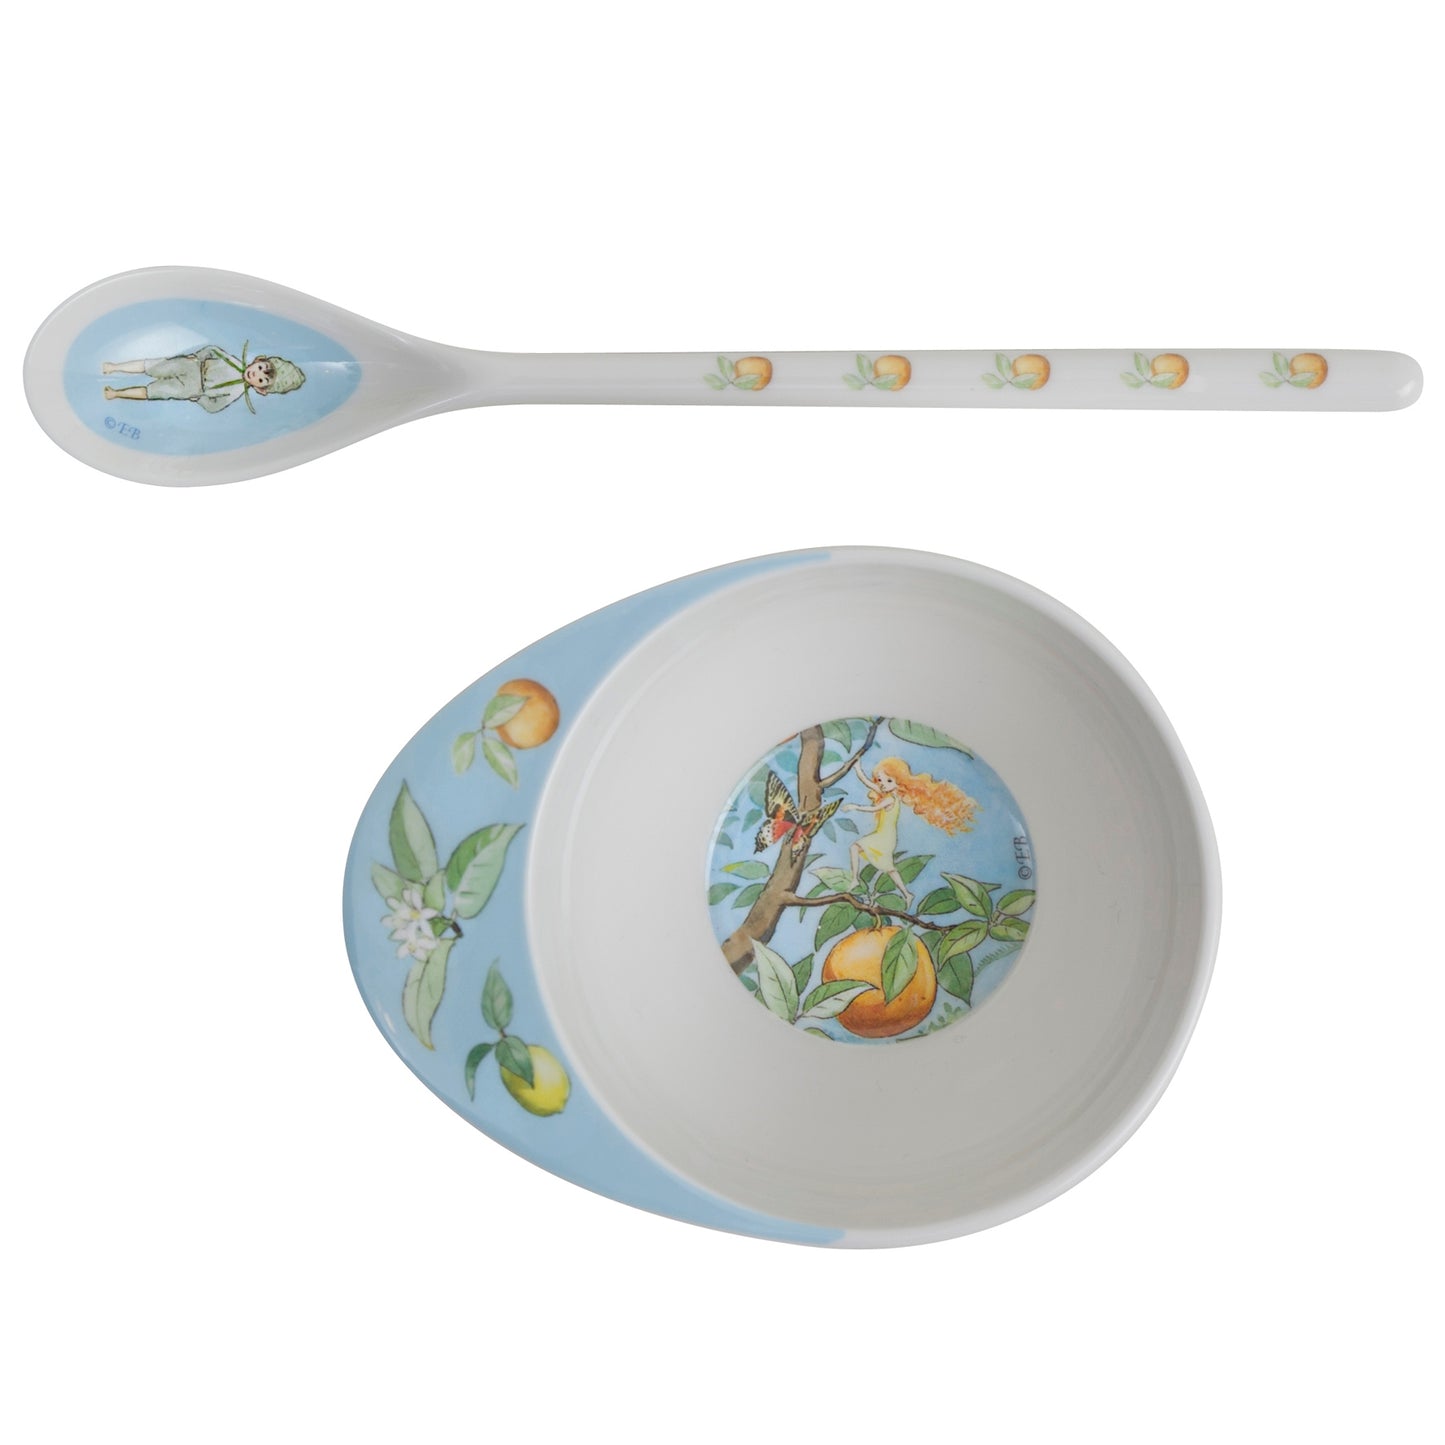 Elsa Beskow Elsa Beskow "Sun Egg" Baby Feeding Bowl & Spoon - blueottertoys-RS3235